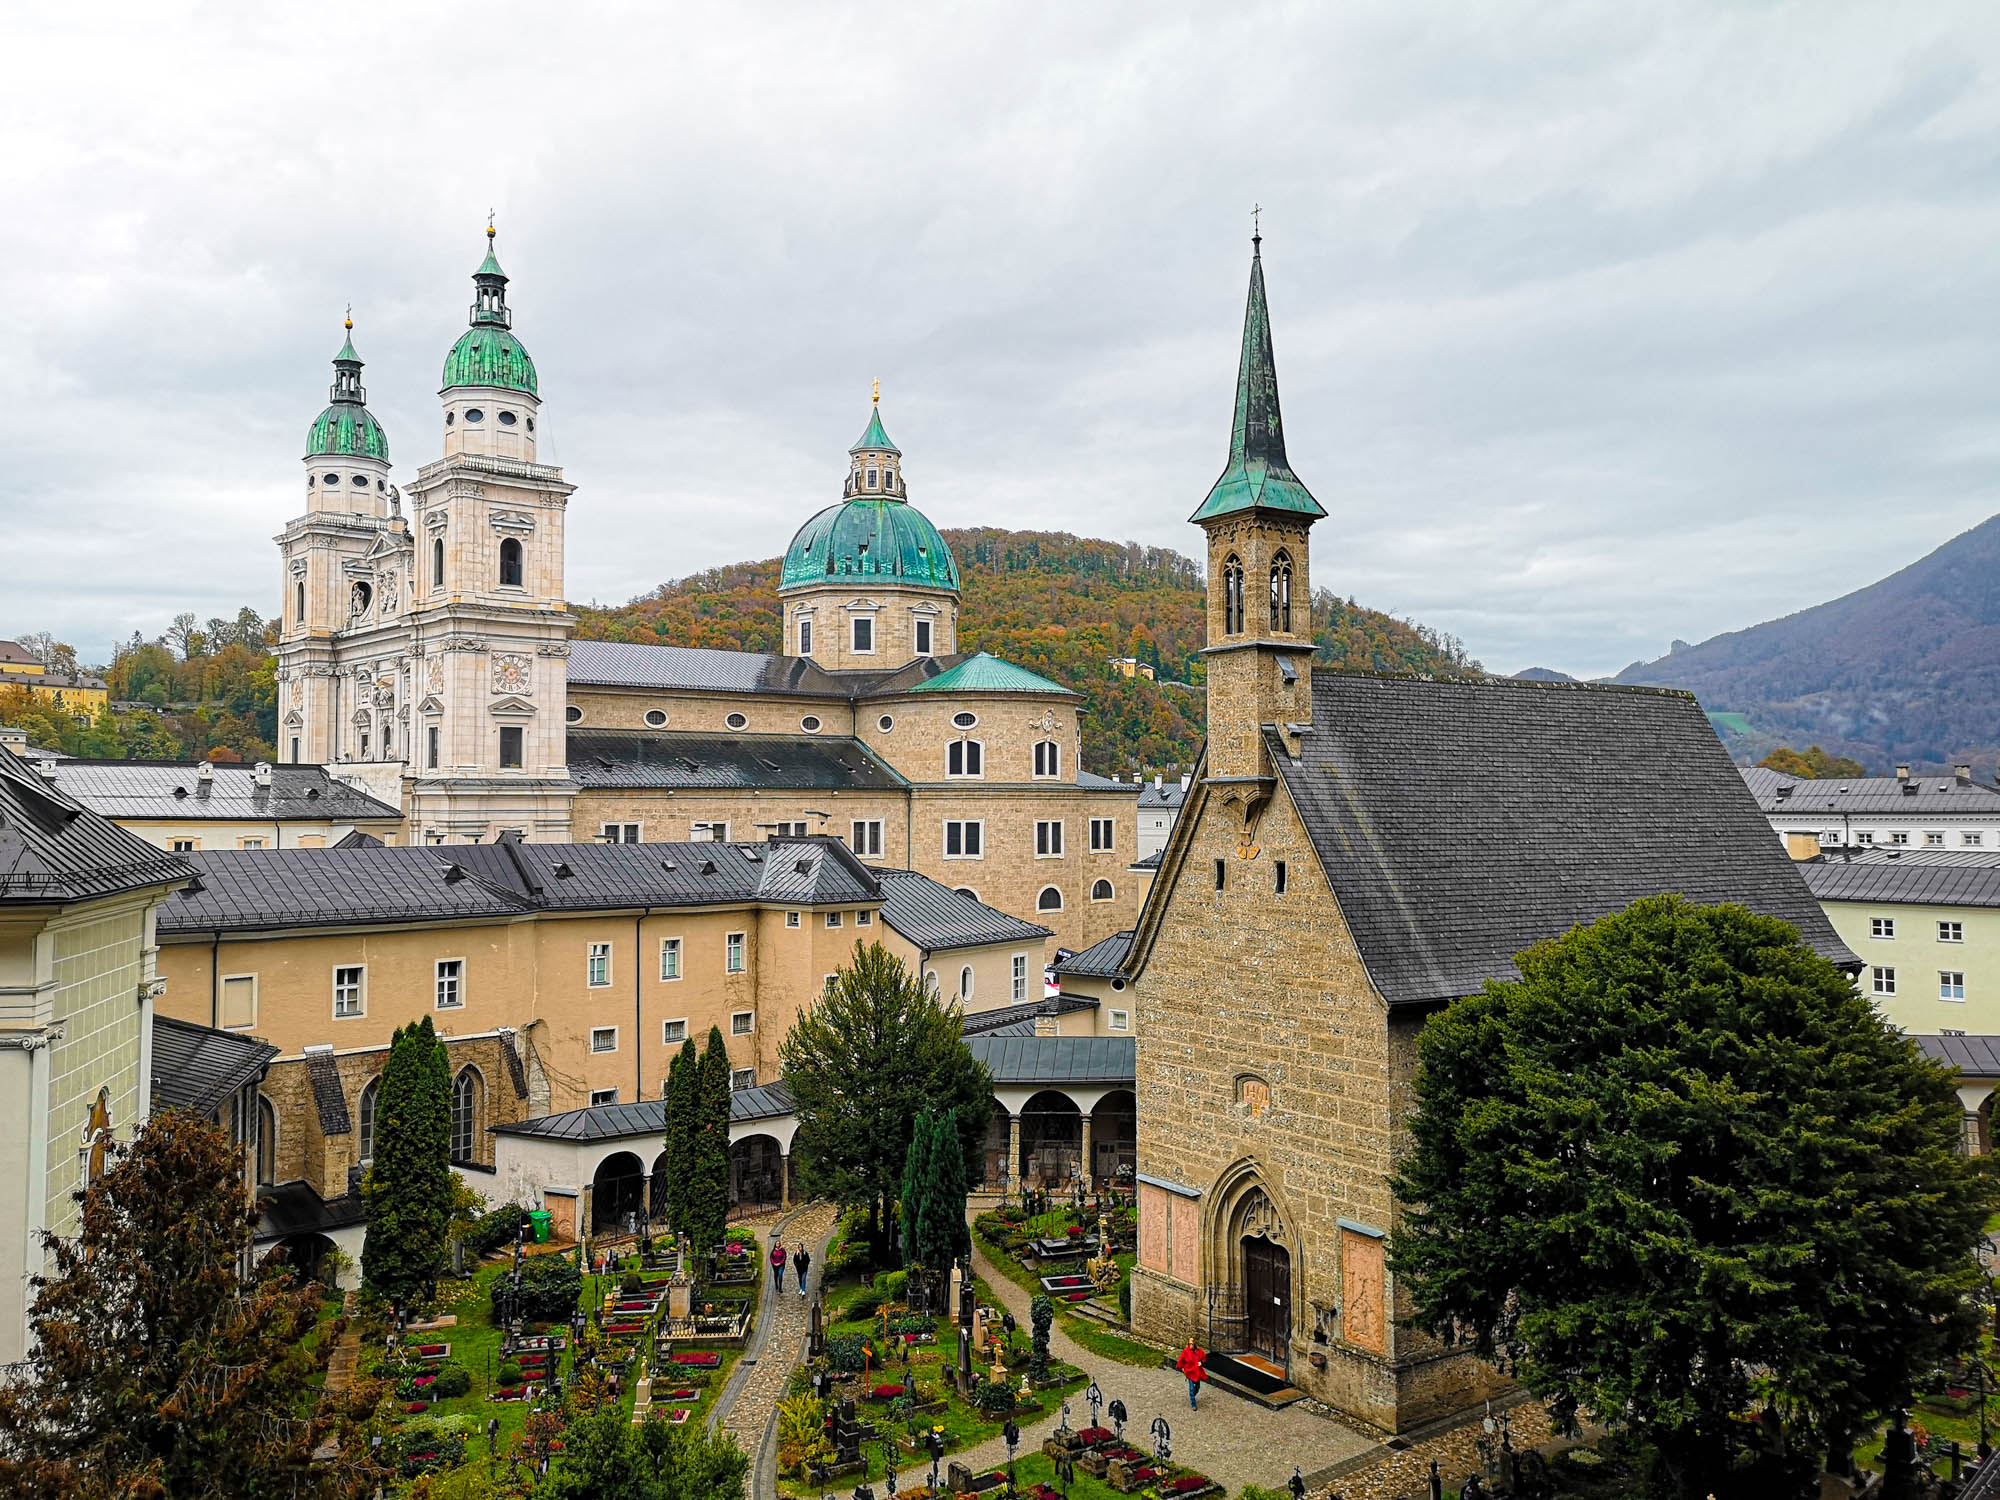 St Peter cemetary in Salzburg, Austria